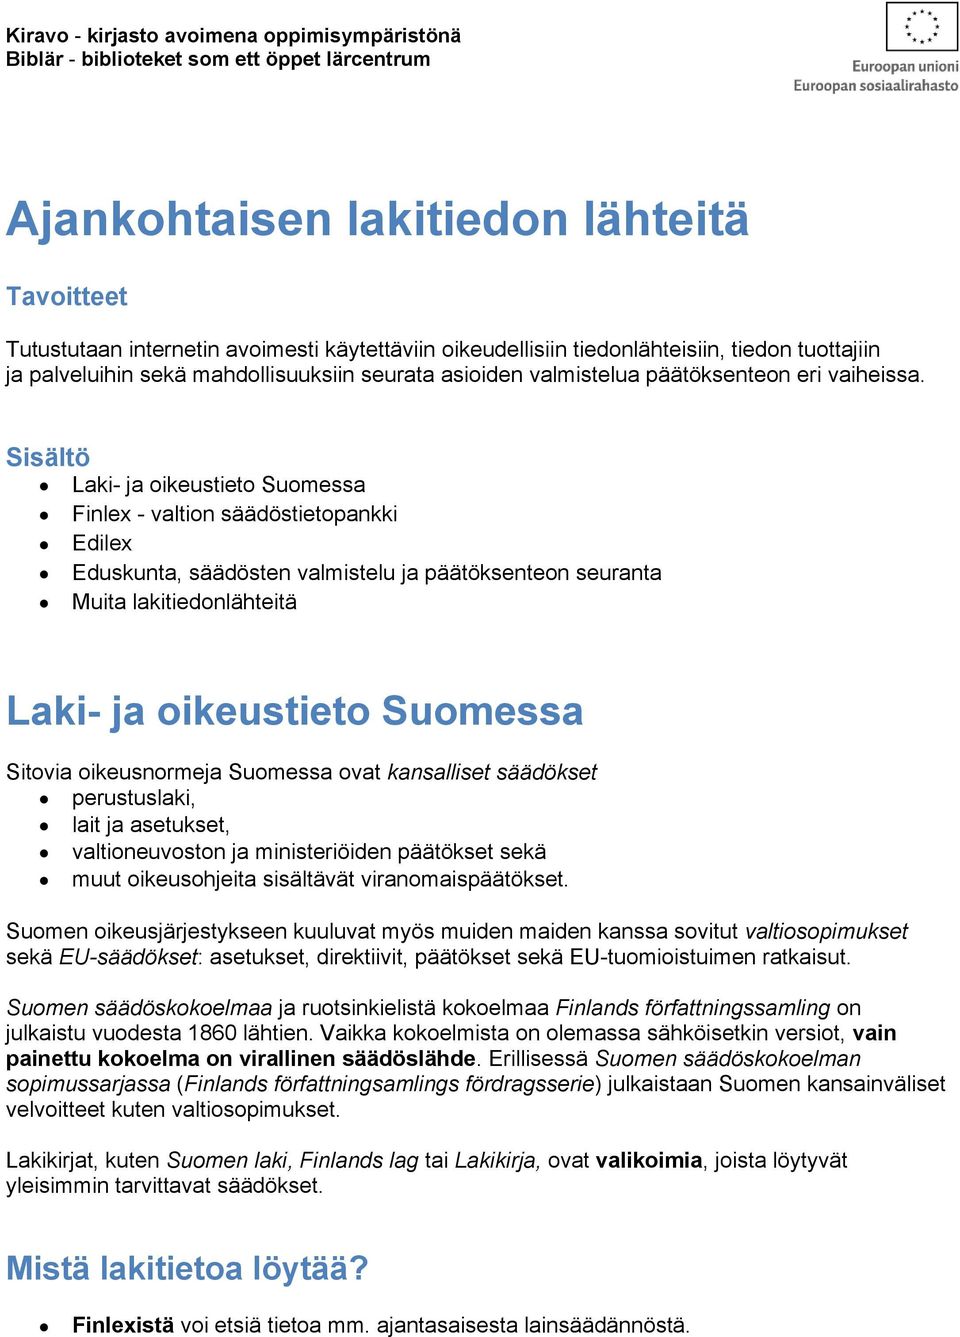 Sisältö Laki- ja oikeustieto Suomessa Finlex - valtion säädöstietopankki Edilex Eduskunta, säädösten valmistelu ja päätöksenteon seuranta Muita lakitiedonlähteitä Laki- ja oikeustieto Suomessa